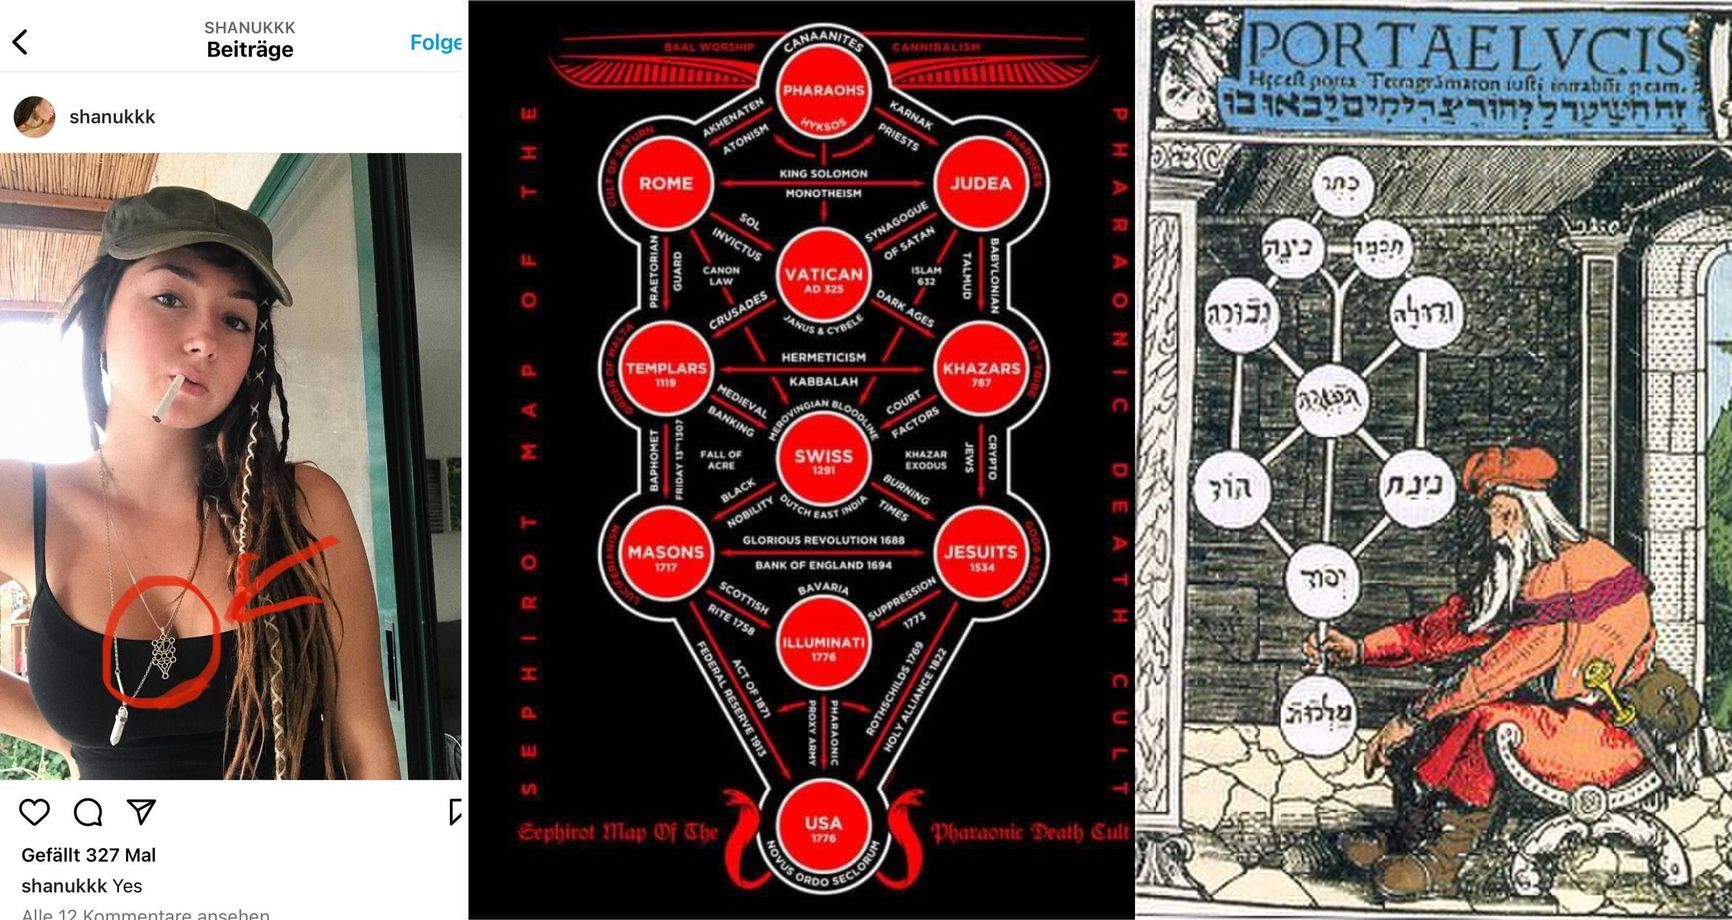 В центре — изображение, которое использует в обвинениях Алина Липп. Справа — «Дерево жизни» в каббале